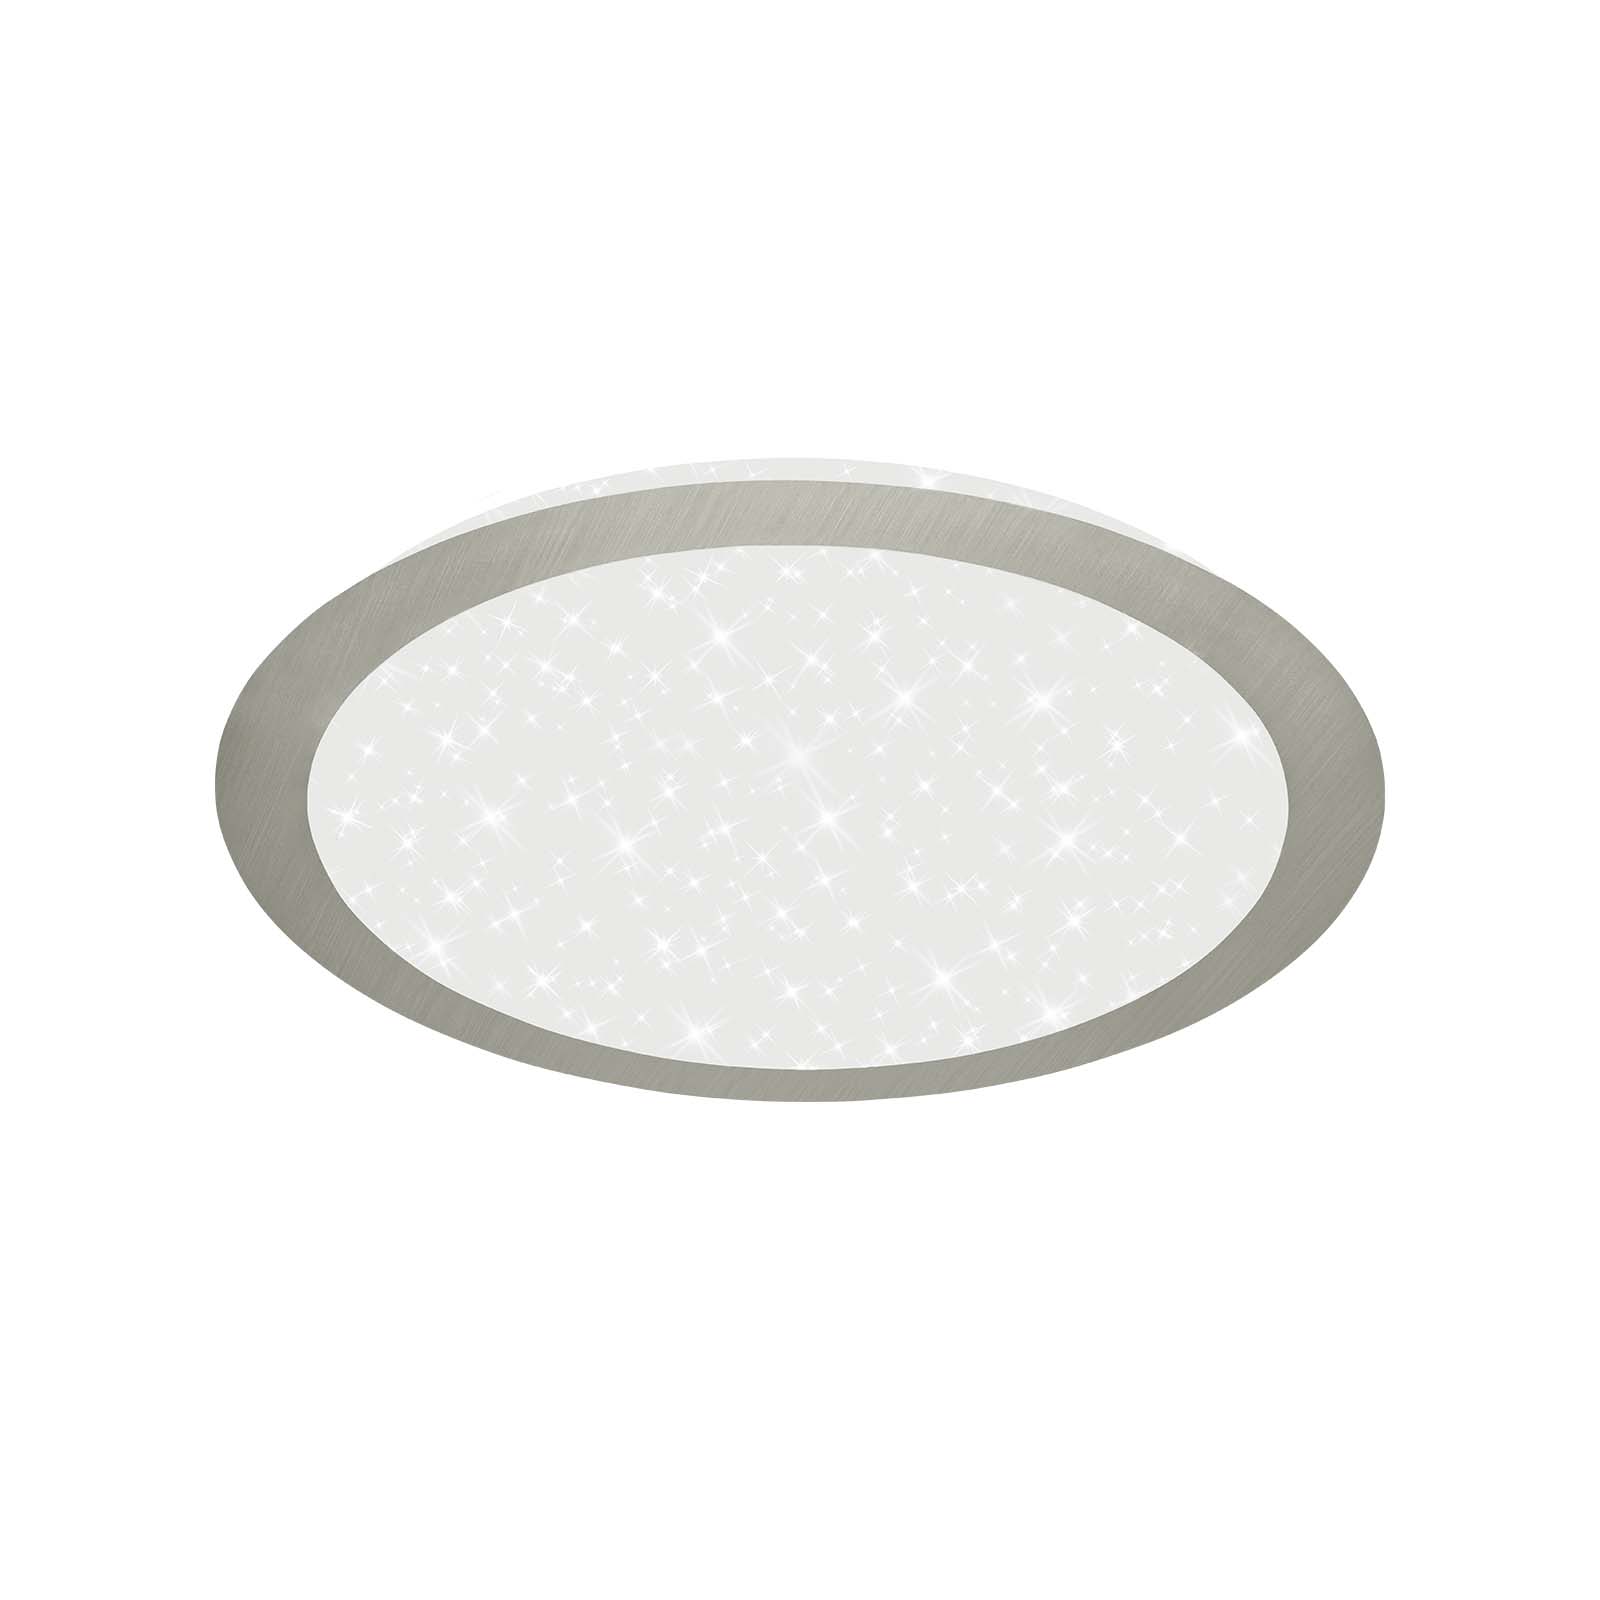 LED Deckenleuchte mit Sternendekor, Ø 31 cm, LED-Platine, 12 W, 1200 lm, matt-nickel